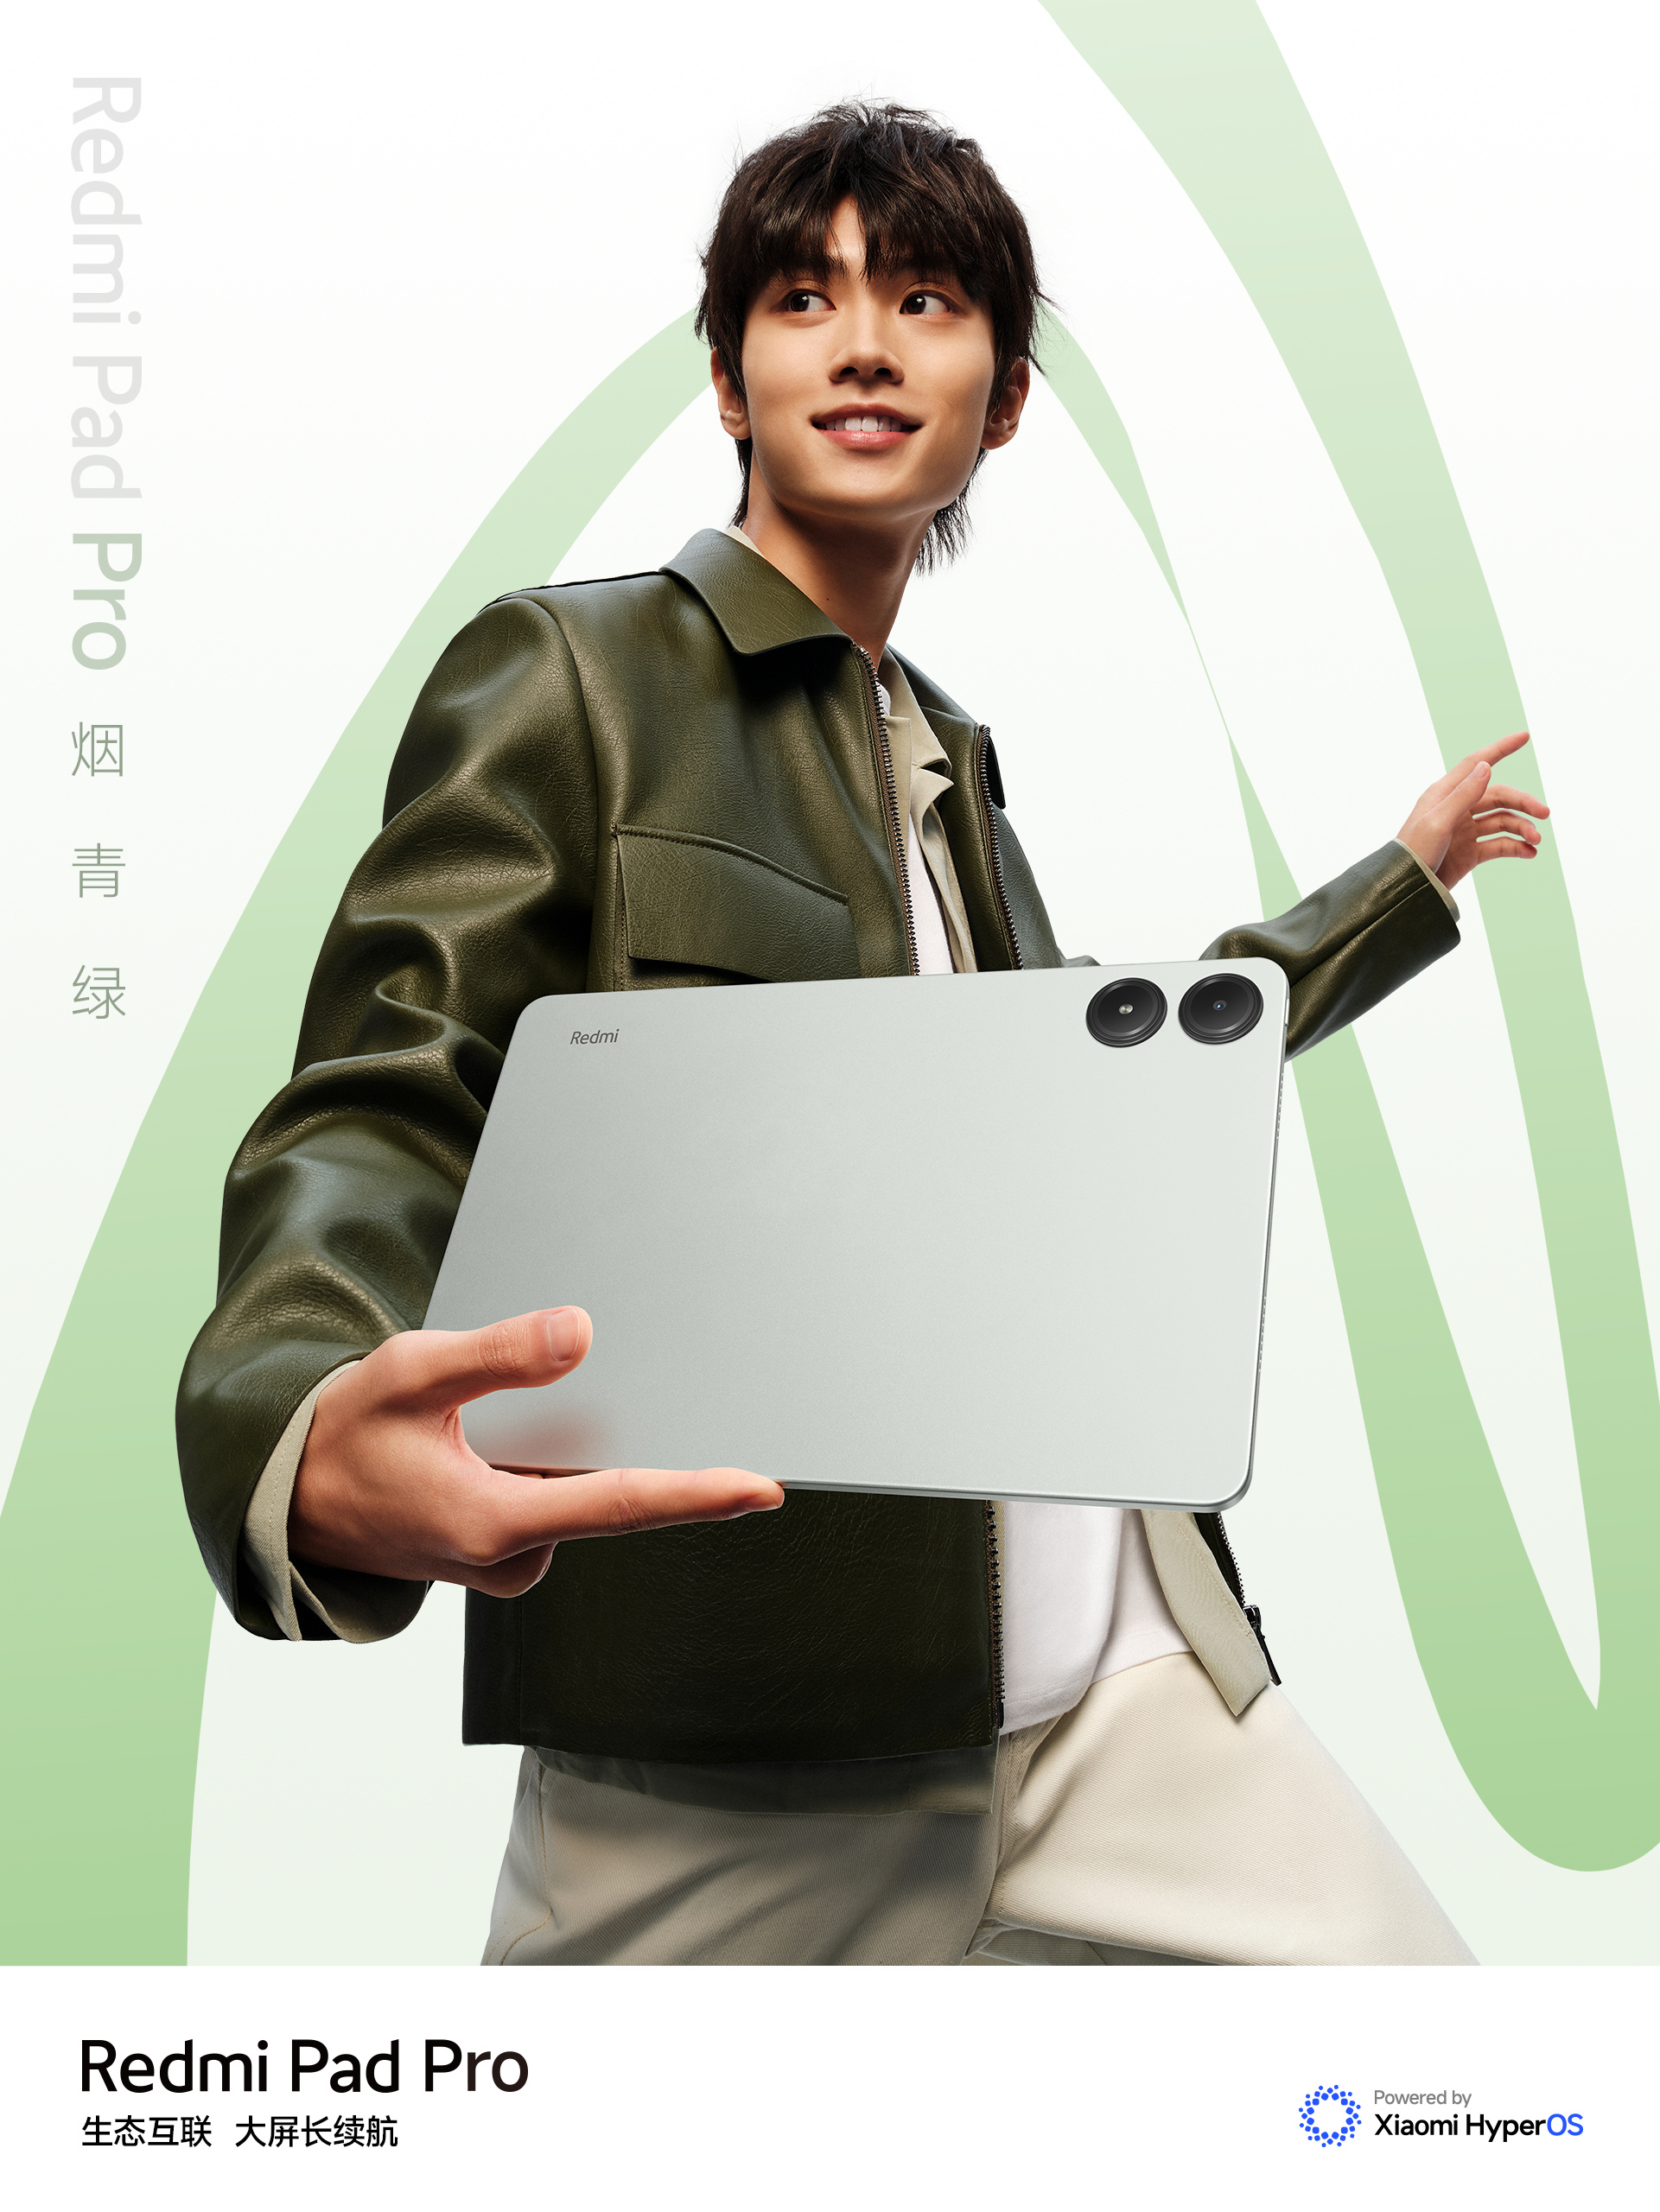 Xiaomi ra mắt máy tính bảng đẹp như iPad, chip Snapdragon 7s Gen 2 mạnh mẽ, pin 10.000mAh, giá chỉ hơn 5 triệu đồng- Ảnh 3.